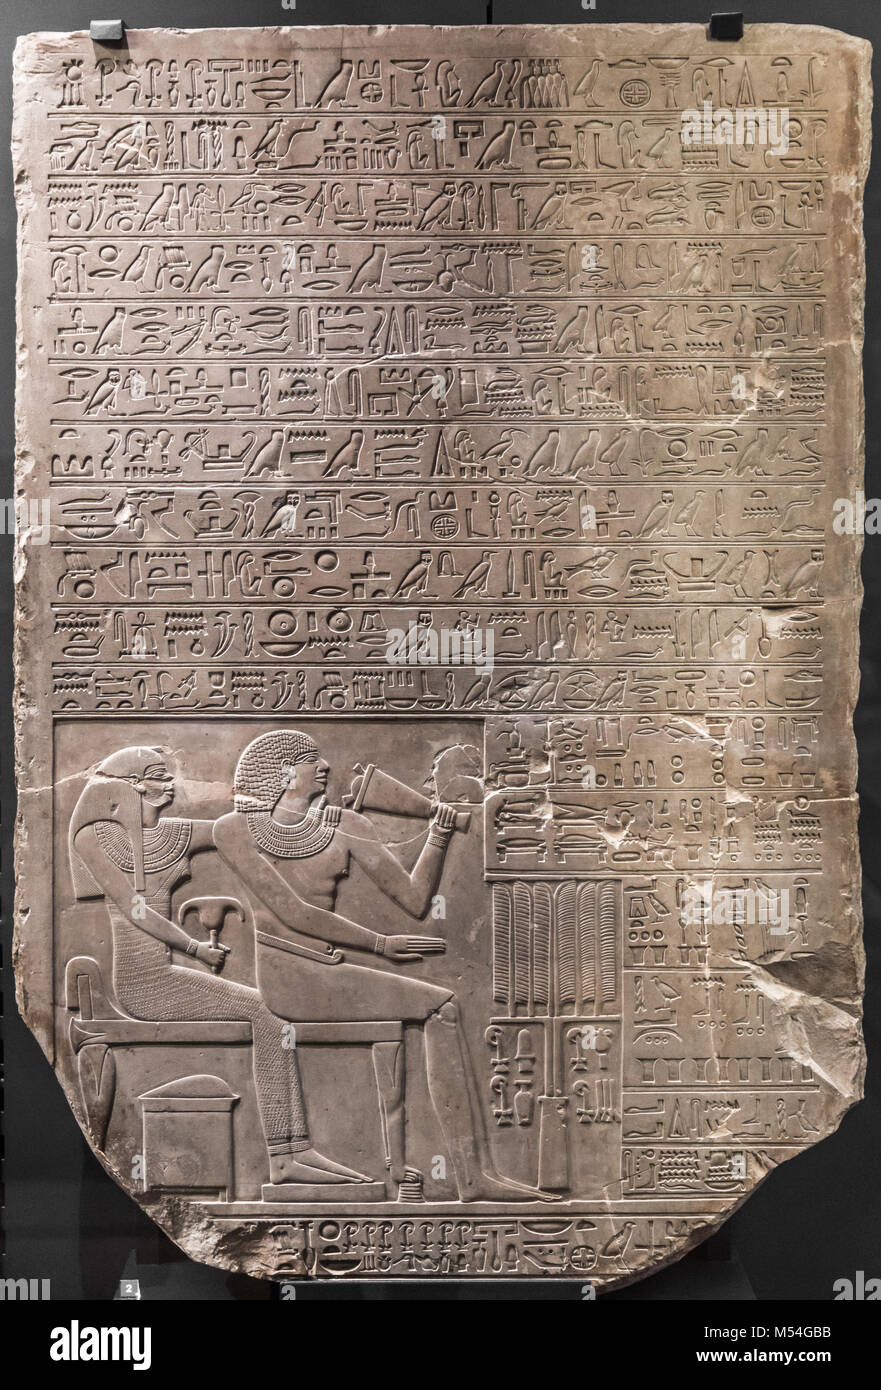 Antico bassorilievo in pietra a Chnum tempio in Egitto. Foto Stock